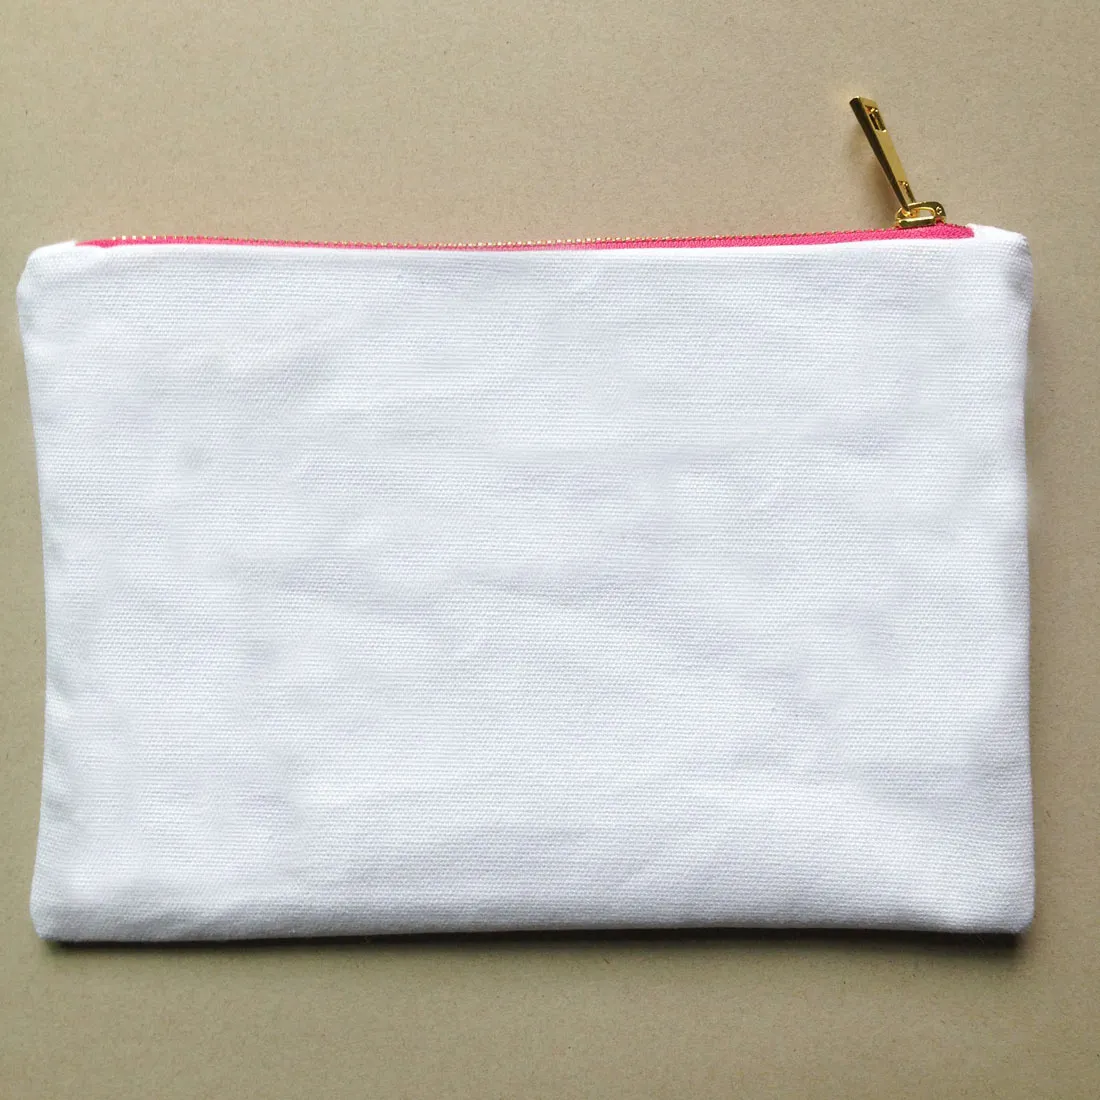 pianura tela di cotone vuote compongono il sacchetto con rivestimento superiore zip oro qualità 7x10in sacchetto di colore toilette solida vernice di DIY / stampa in bianco / bianco / avorio